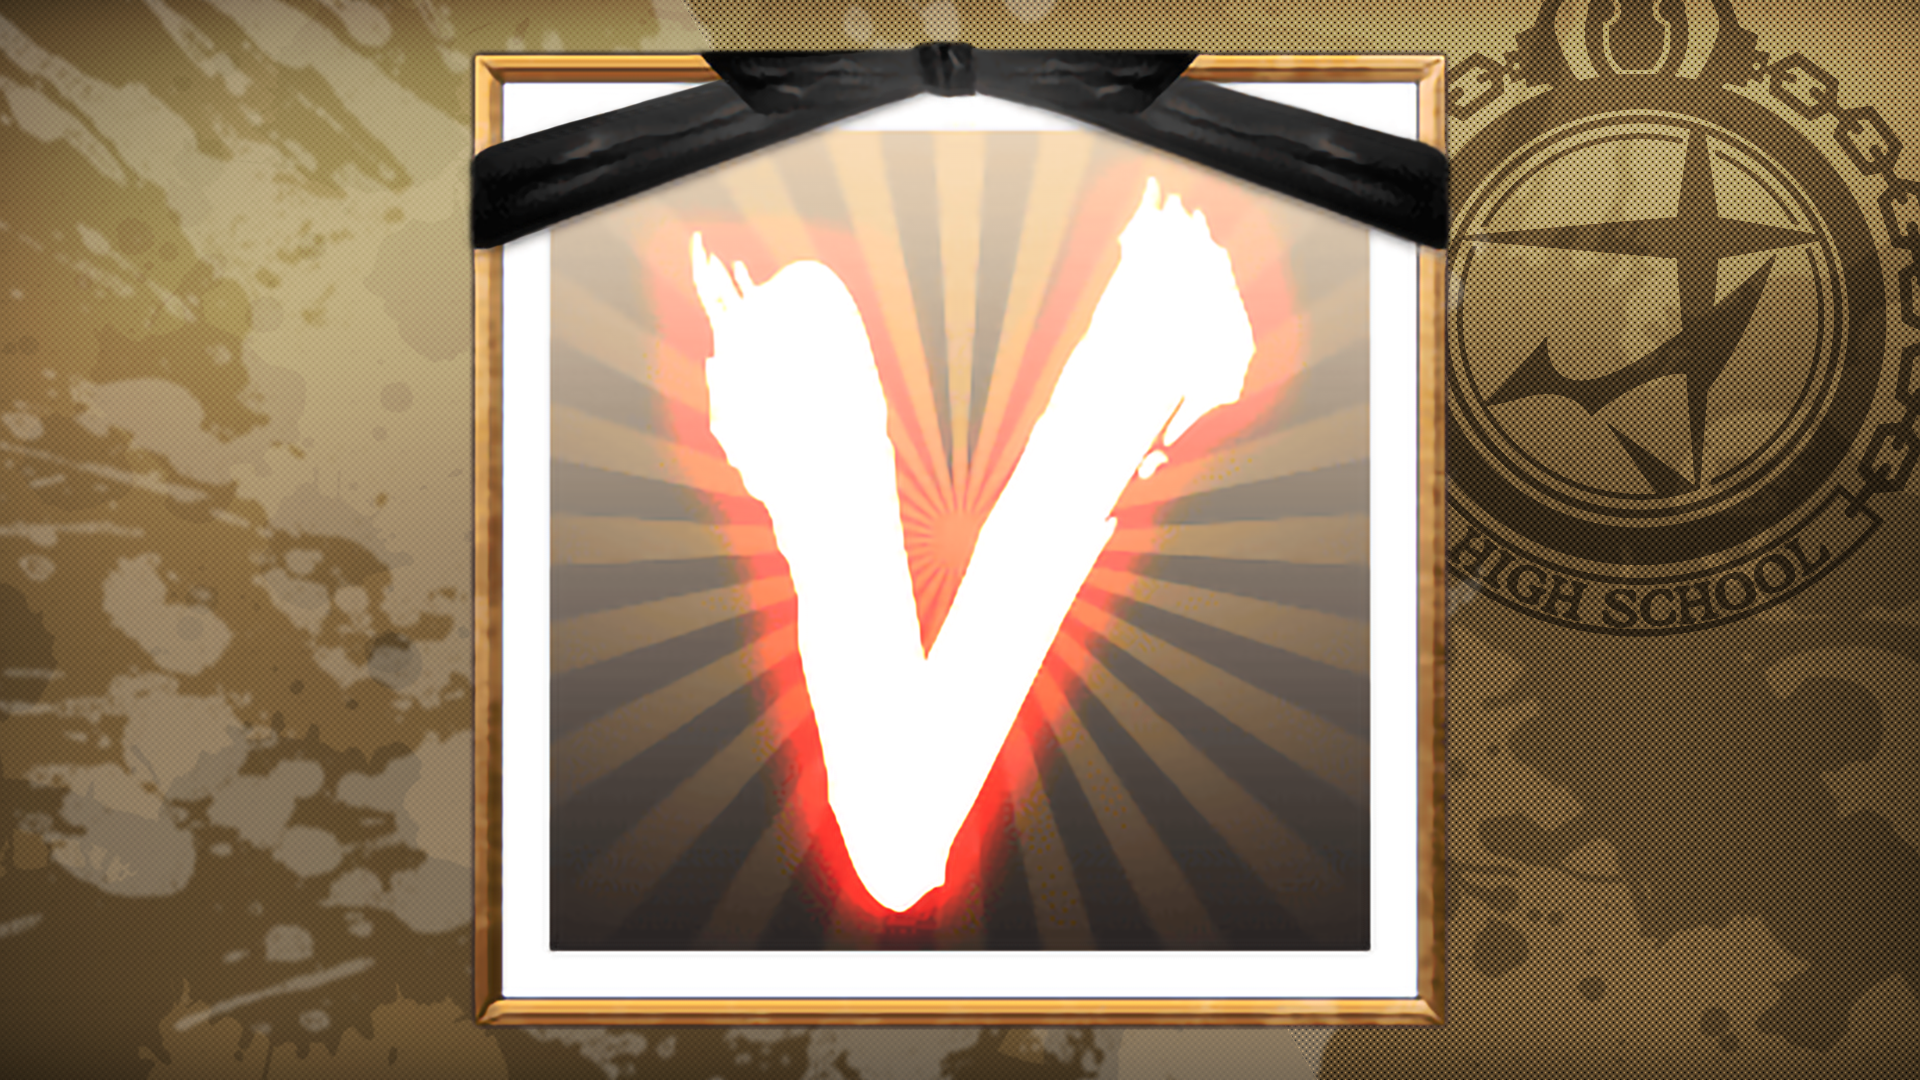 Icon for Veni Vidi Vici